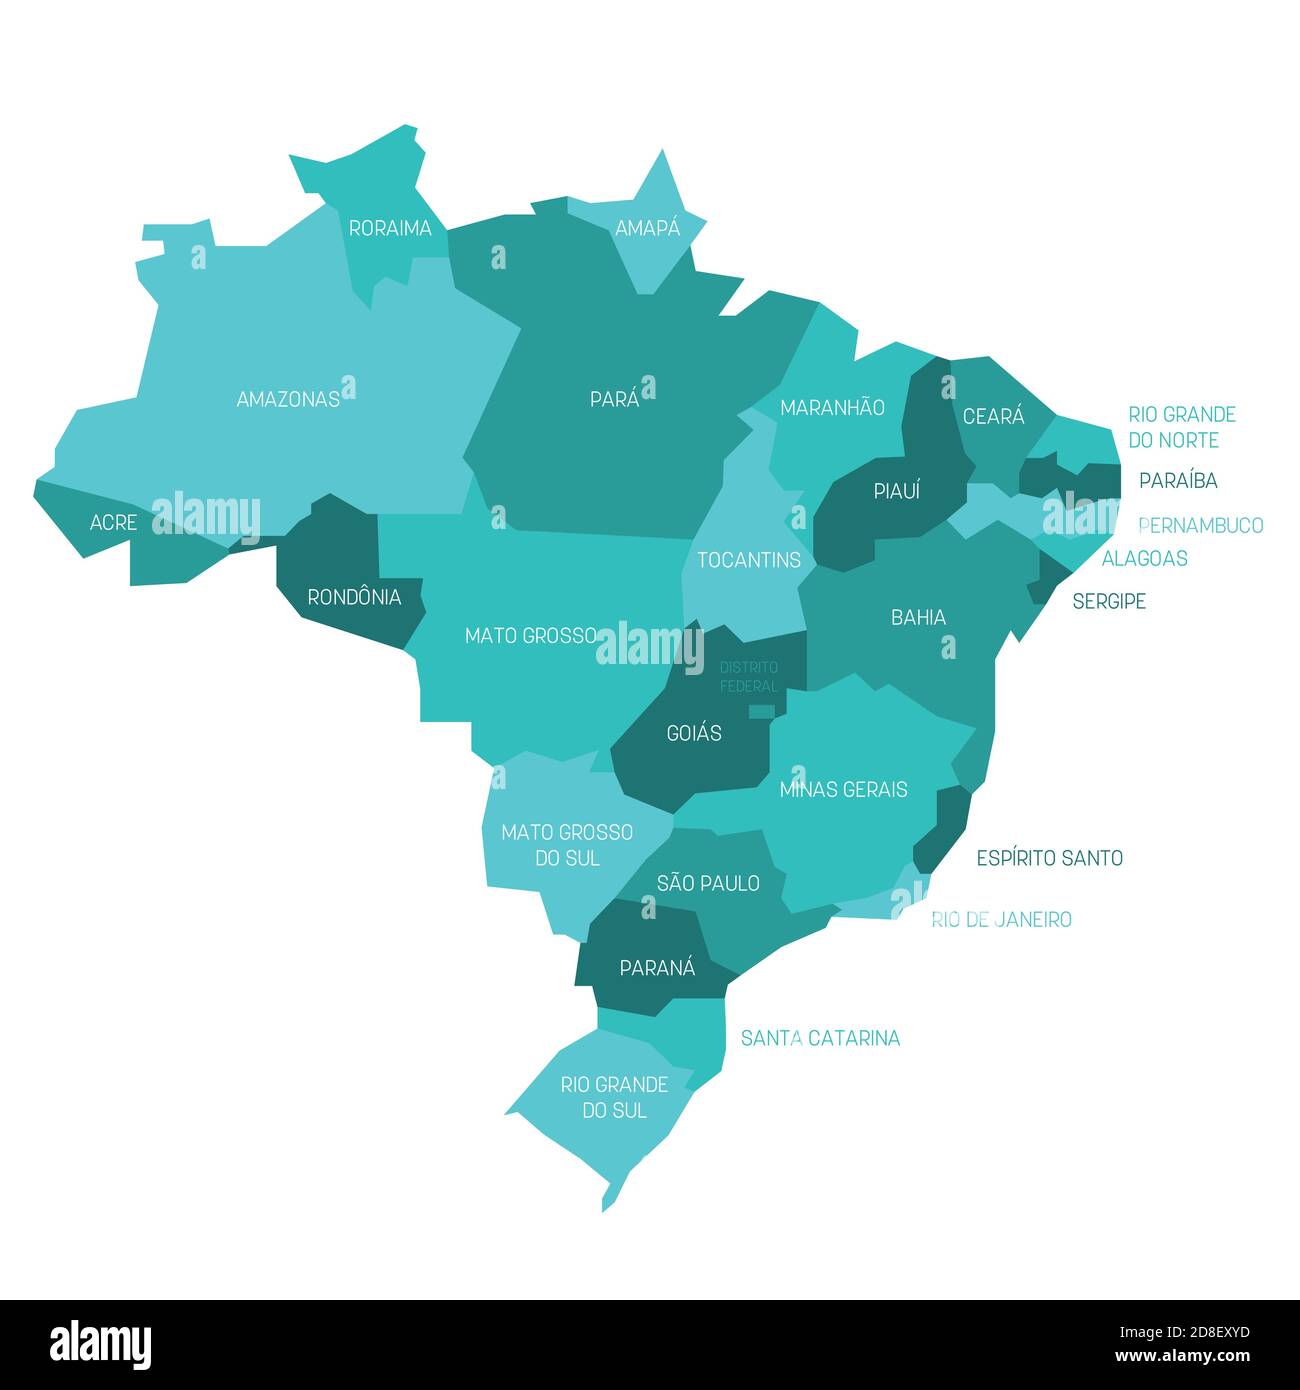 Türkisblaue politische Landkarte von Brasilien. Verwaltungsabteilungen - Staaten. Einfache flache Vektorkarte mit Beschriftungen. Stock Vektor